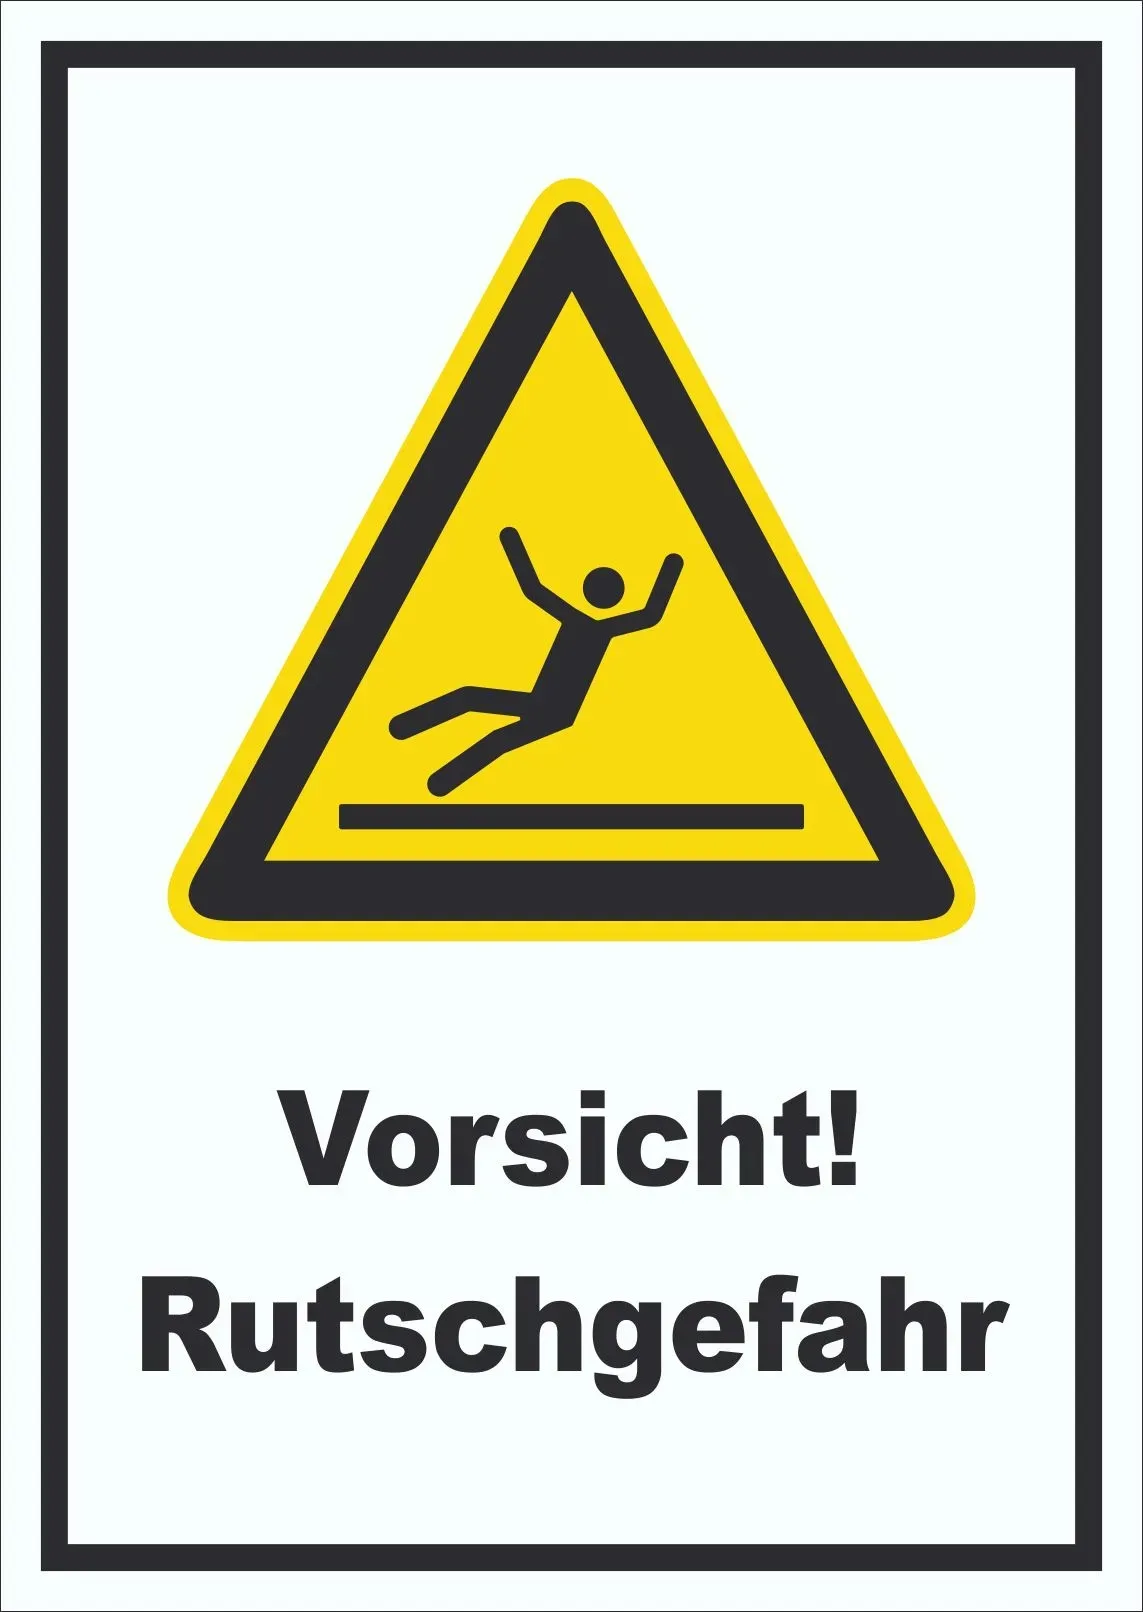 Vorsicht Rutschgefahr Schild A3 (297x420mm)